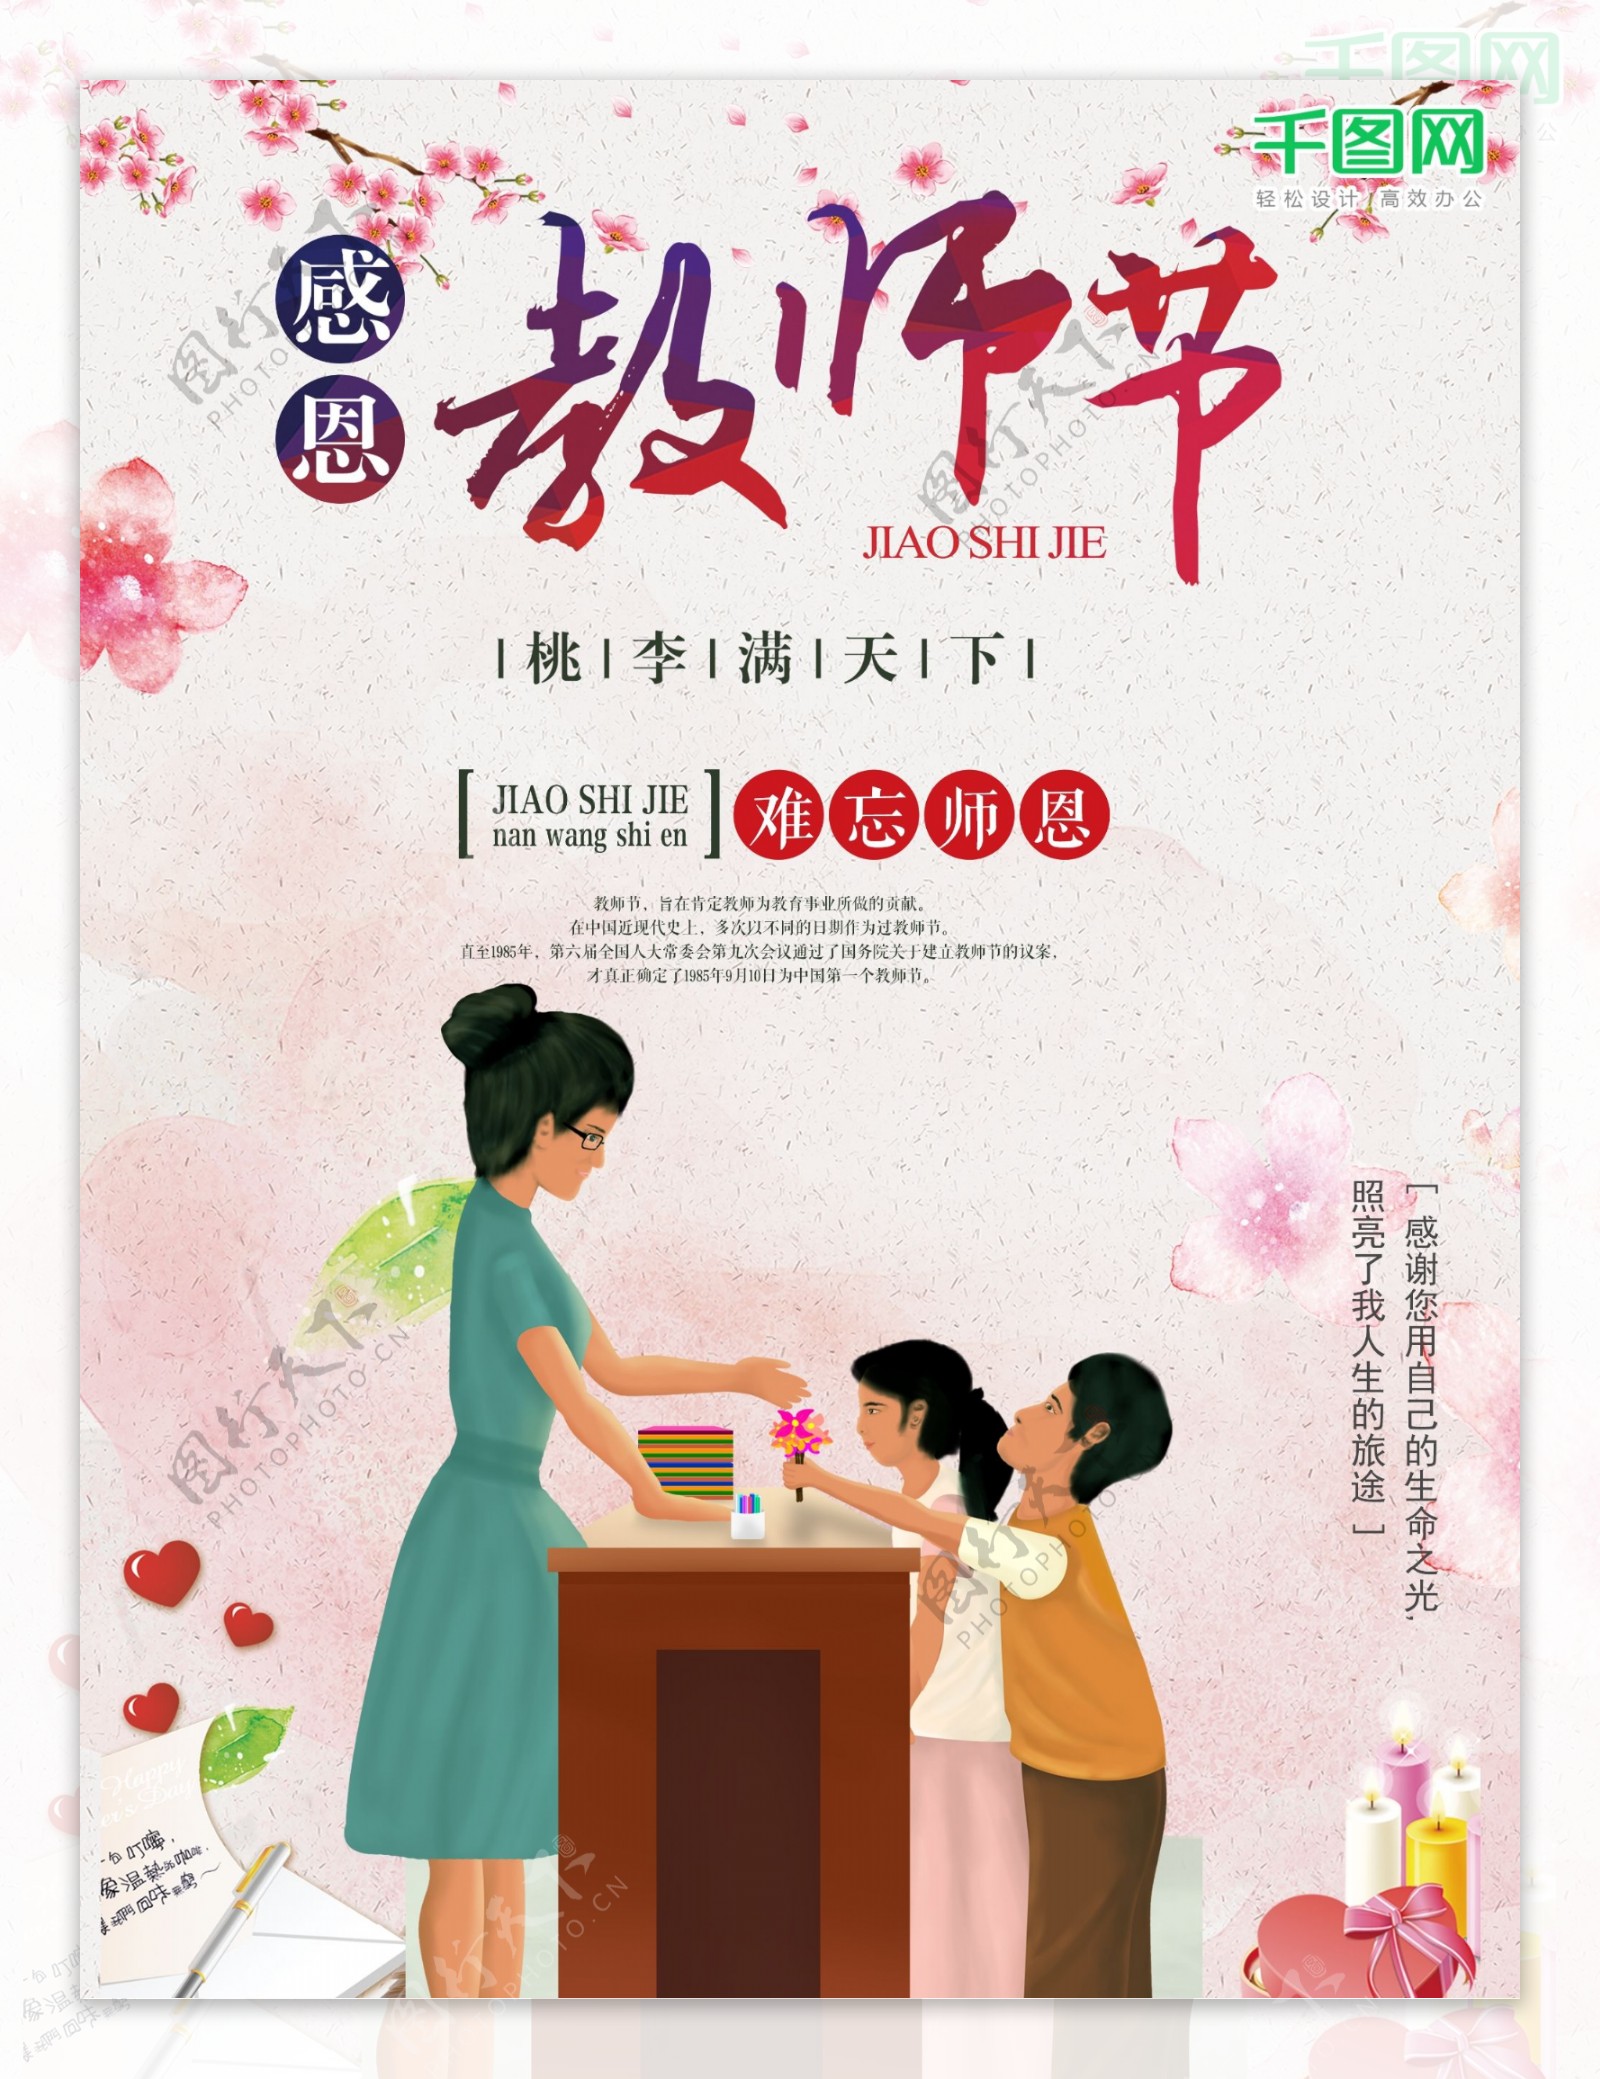 老师教师节9月10日宣传商业海报图片